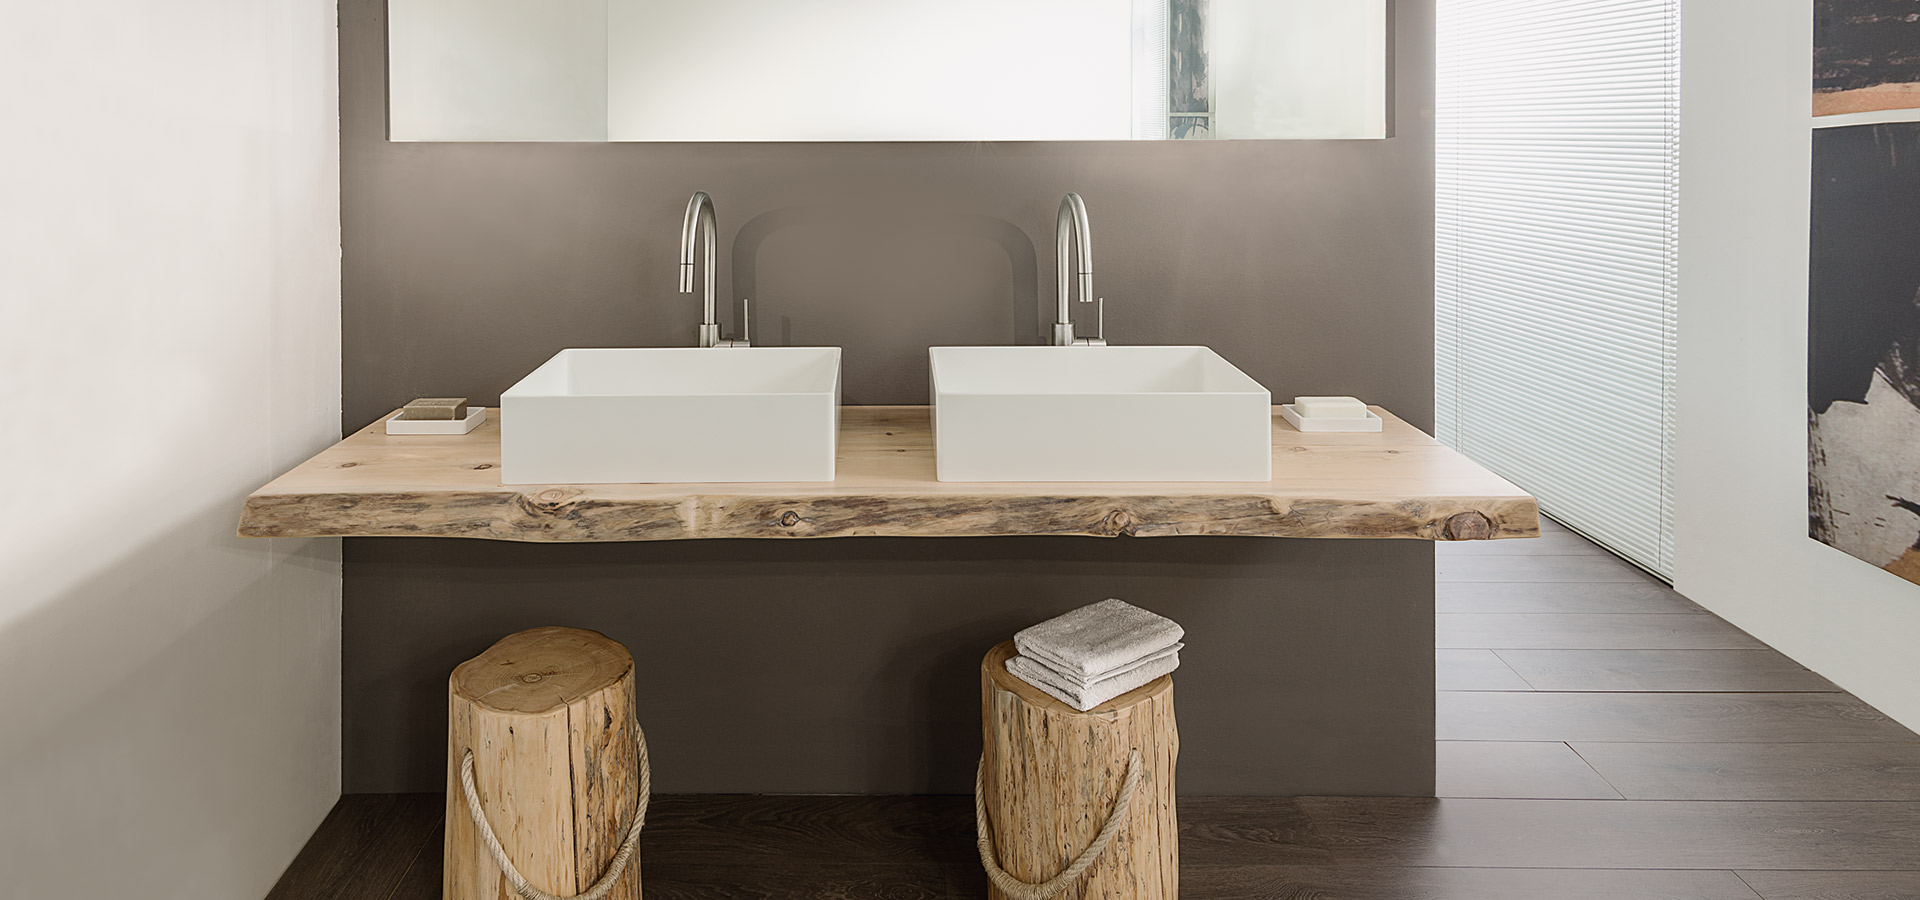 produzione e verniciature professionali per mobili e mensoloni porta lavabo per bagno in legno